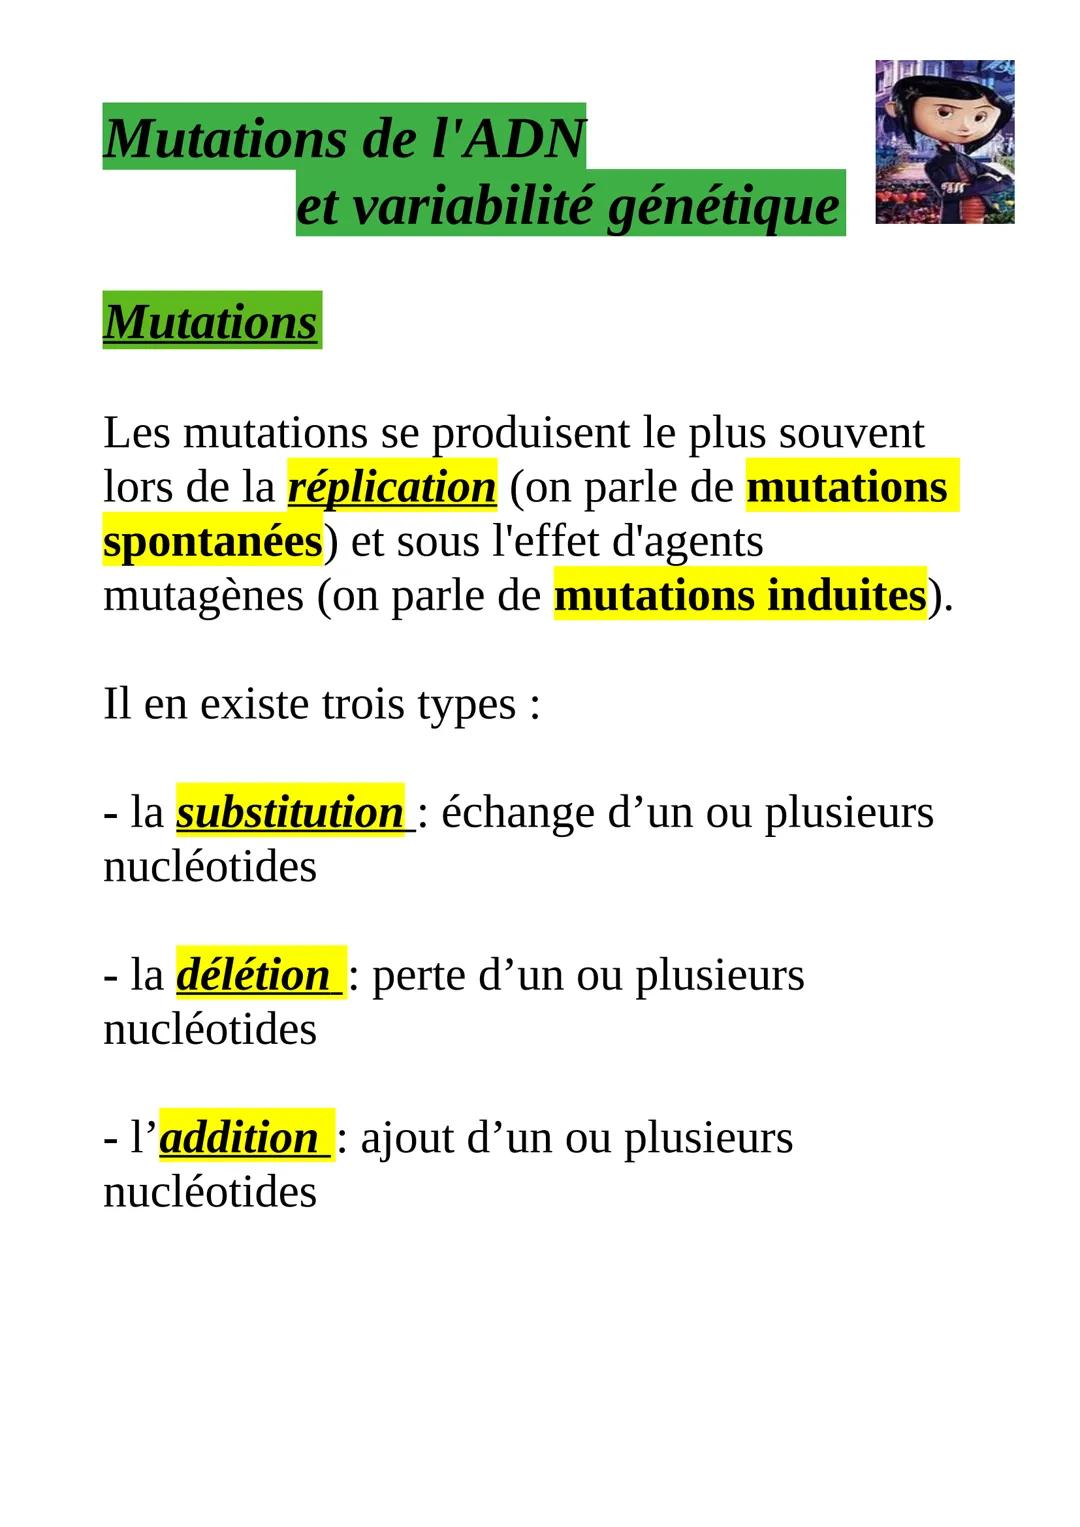 
<h2 id="typesdemutations">Types de mutations</h2>
<p>Les mutations se produisent le plus souvent lors de la réplication, appelées mutations